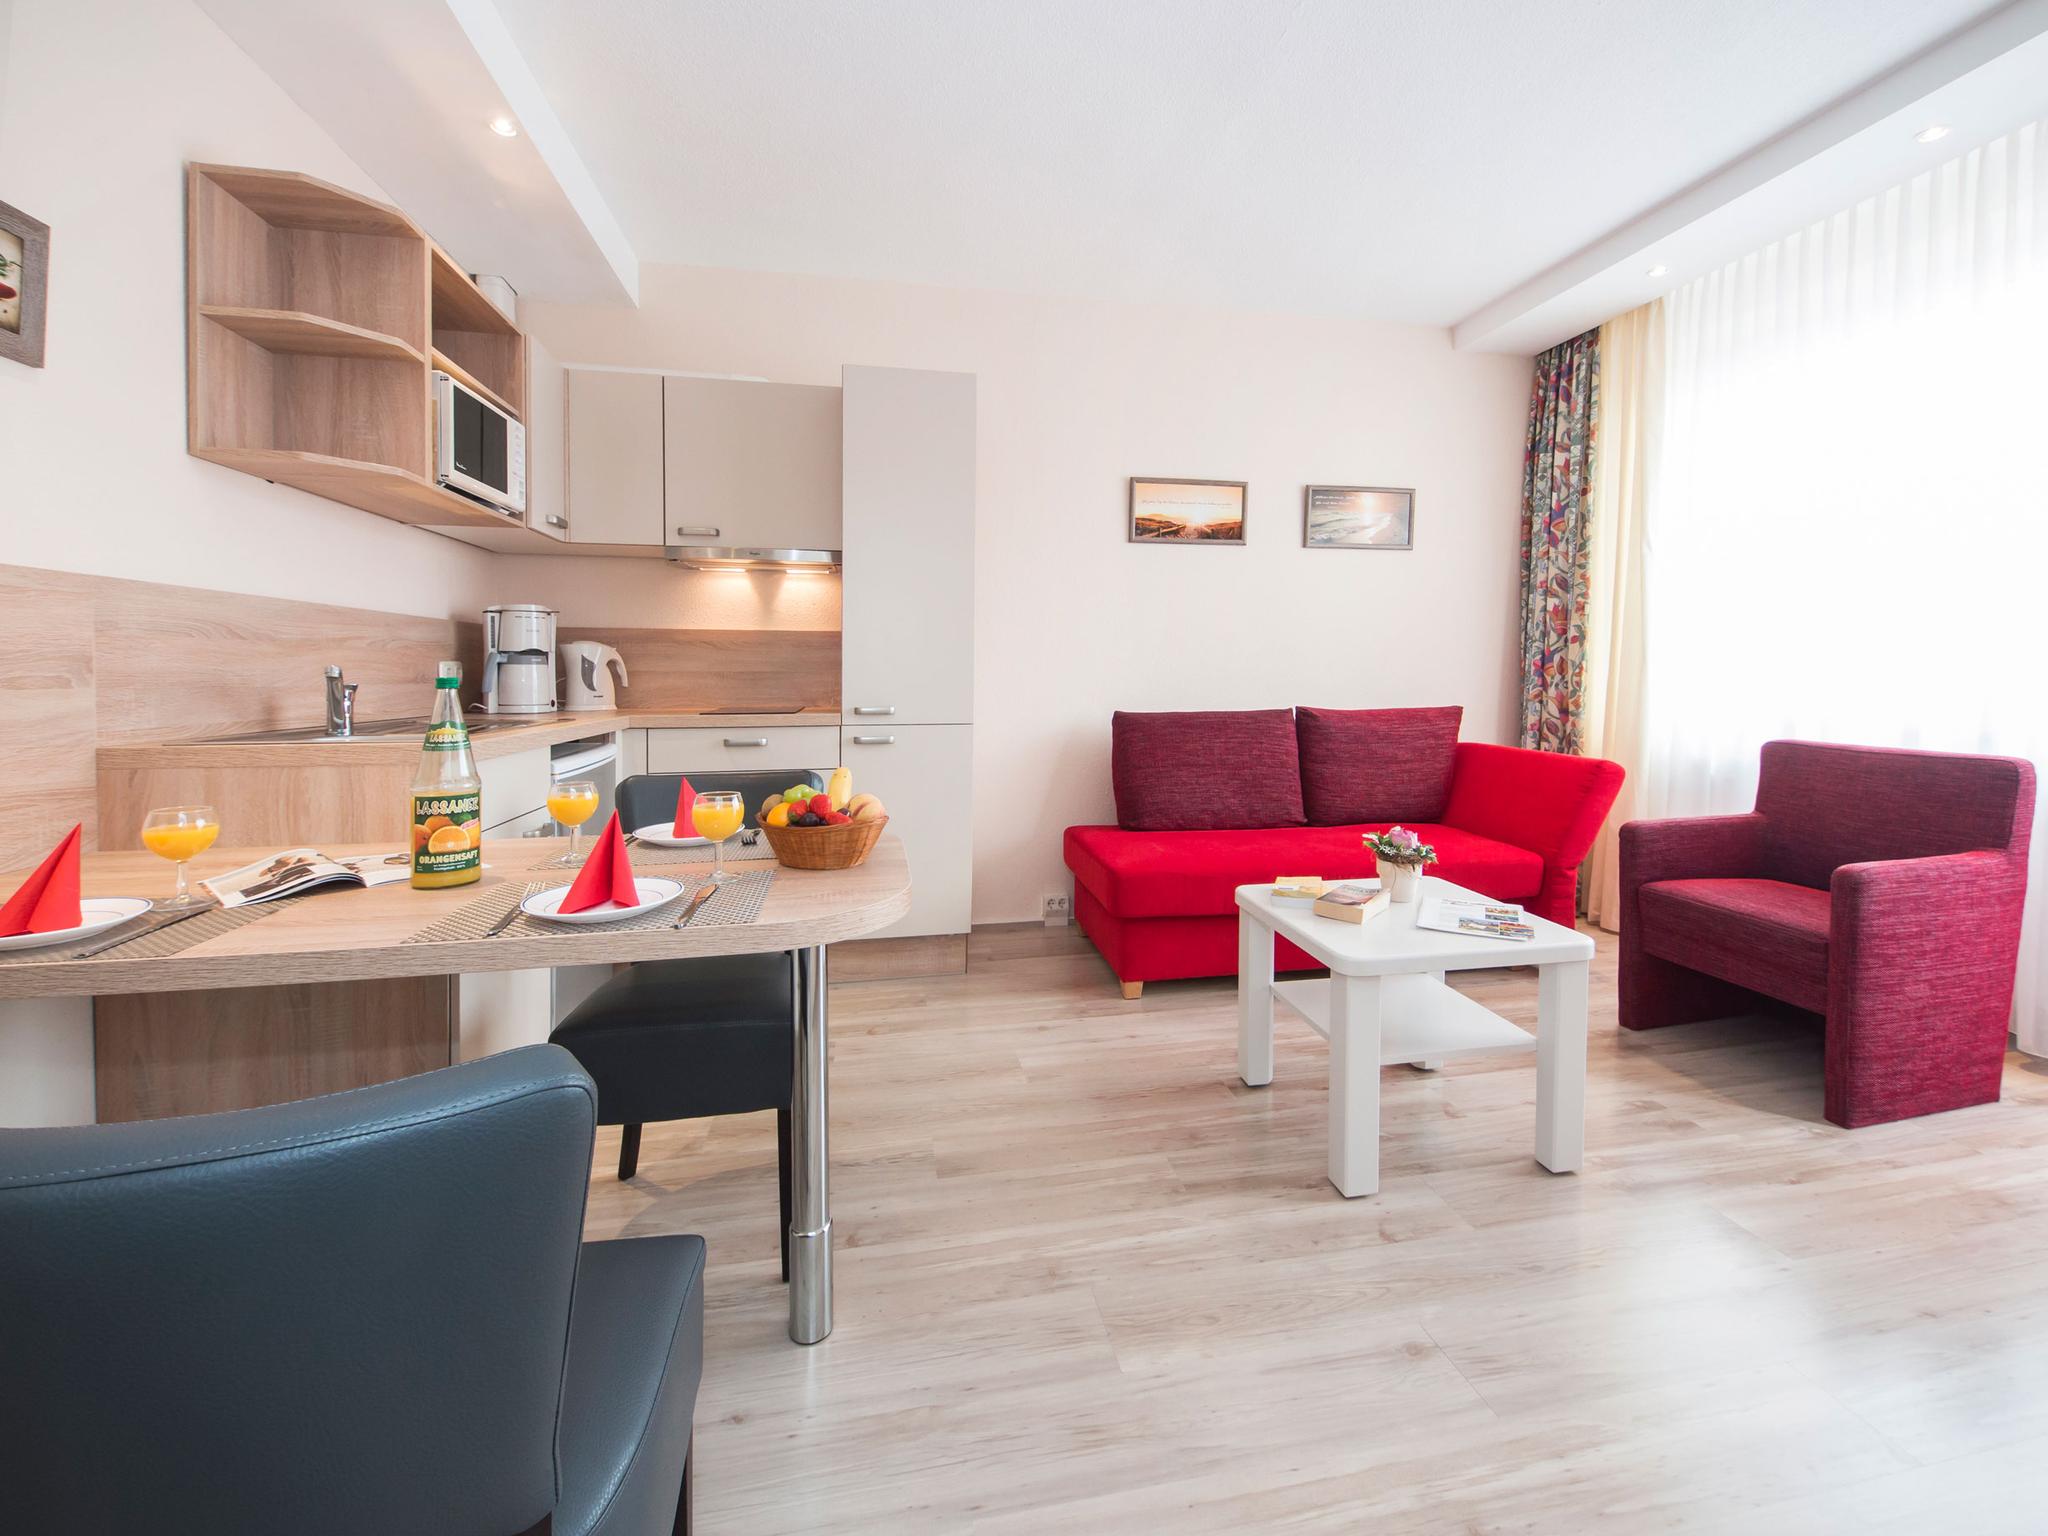 Wohnzimmer mit roten Möbeln kombiniert mit Küchenzeile in Holzoptik.